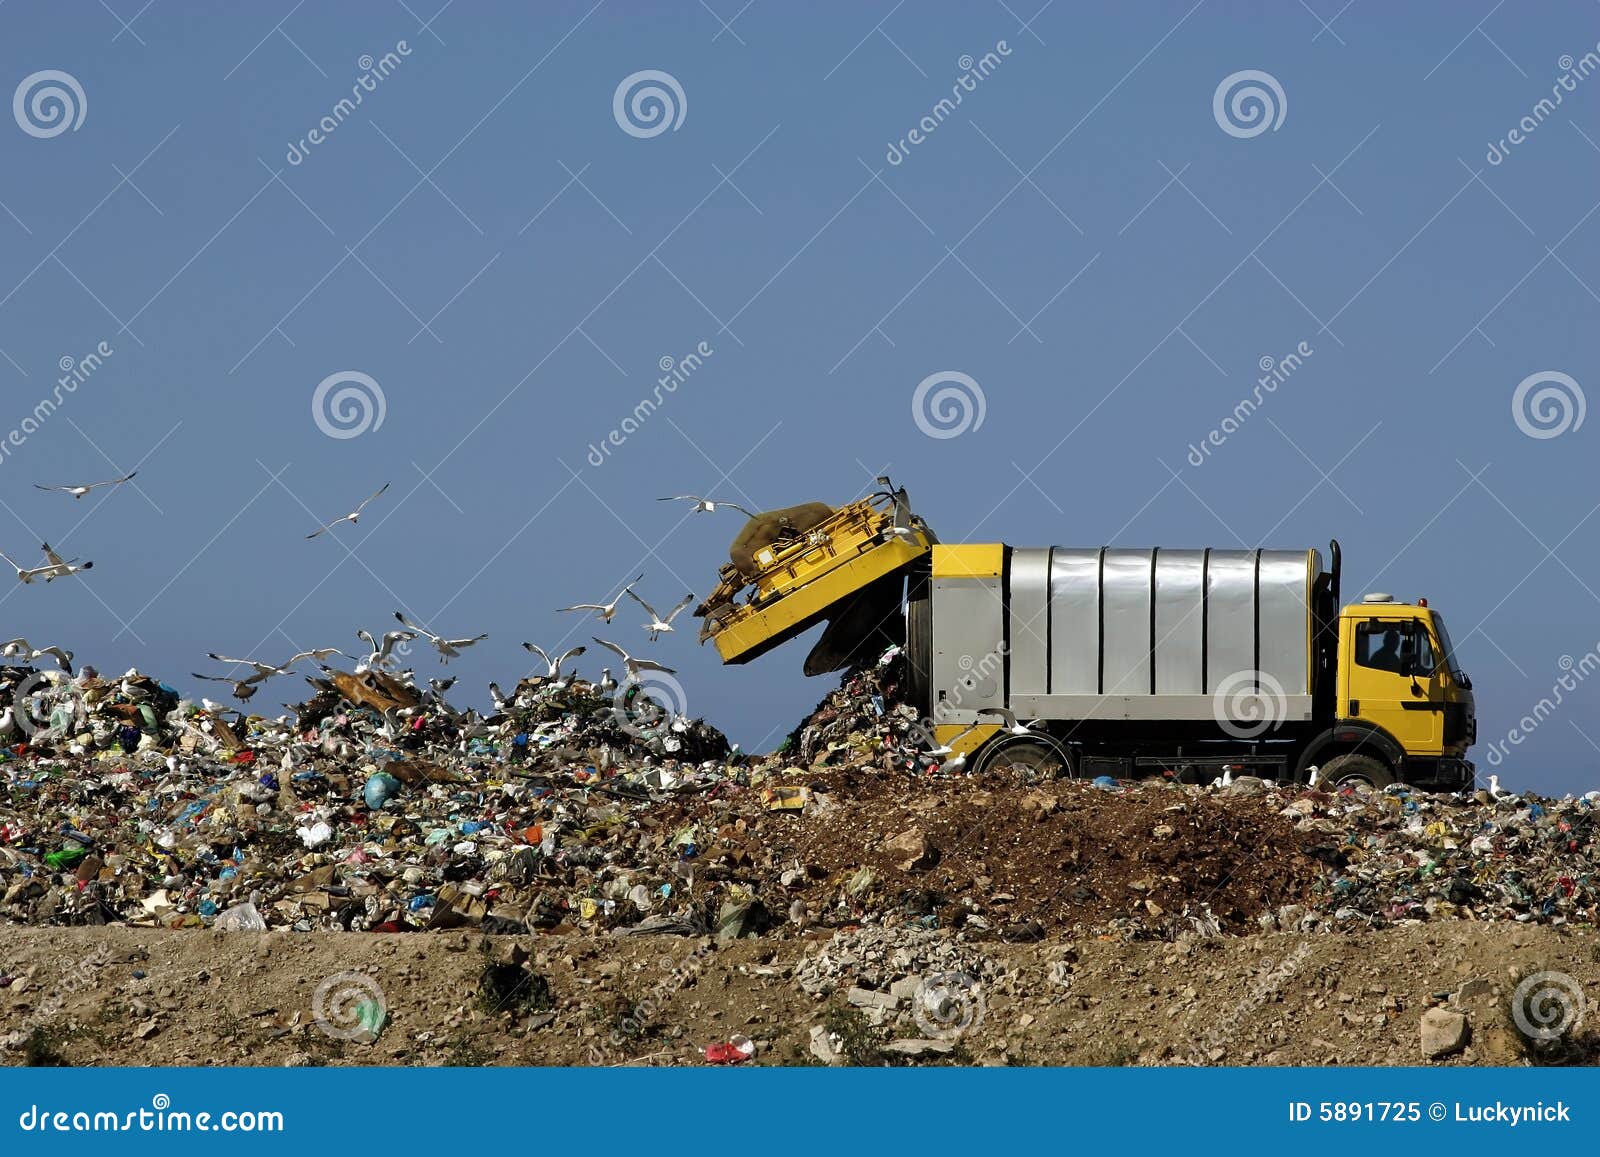 dumping trash